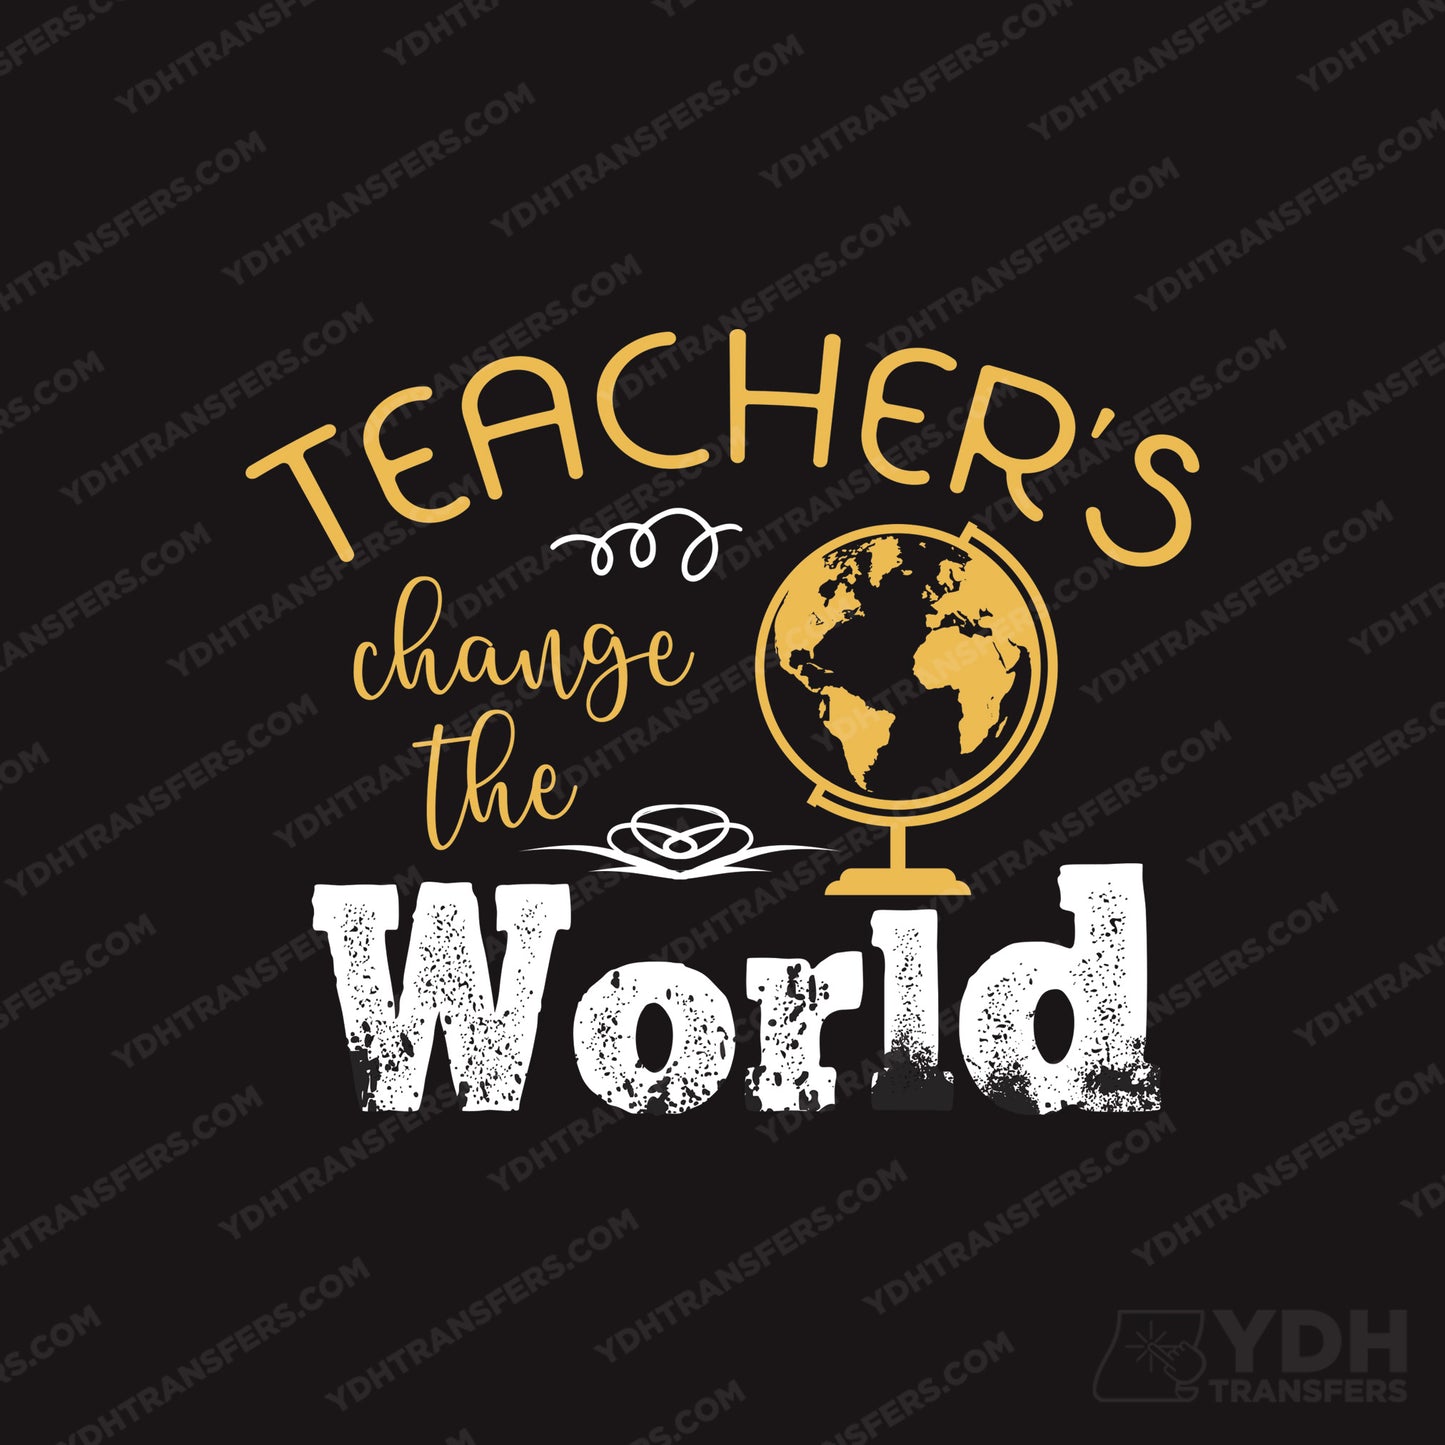 Teachers Change the World Full Color Transfer